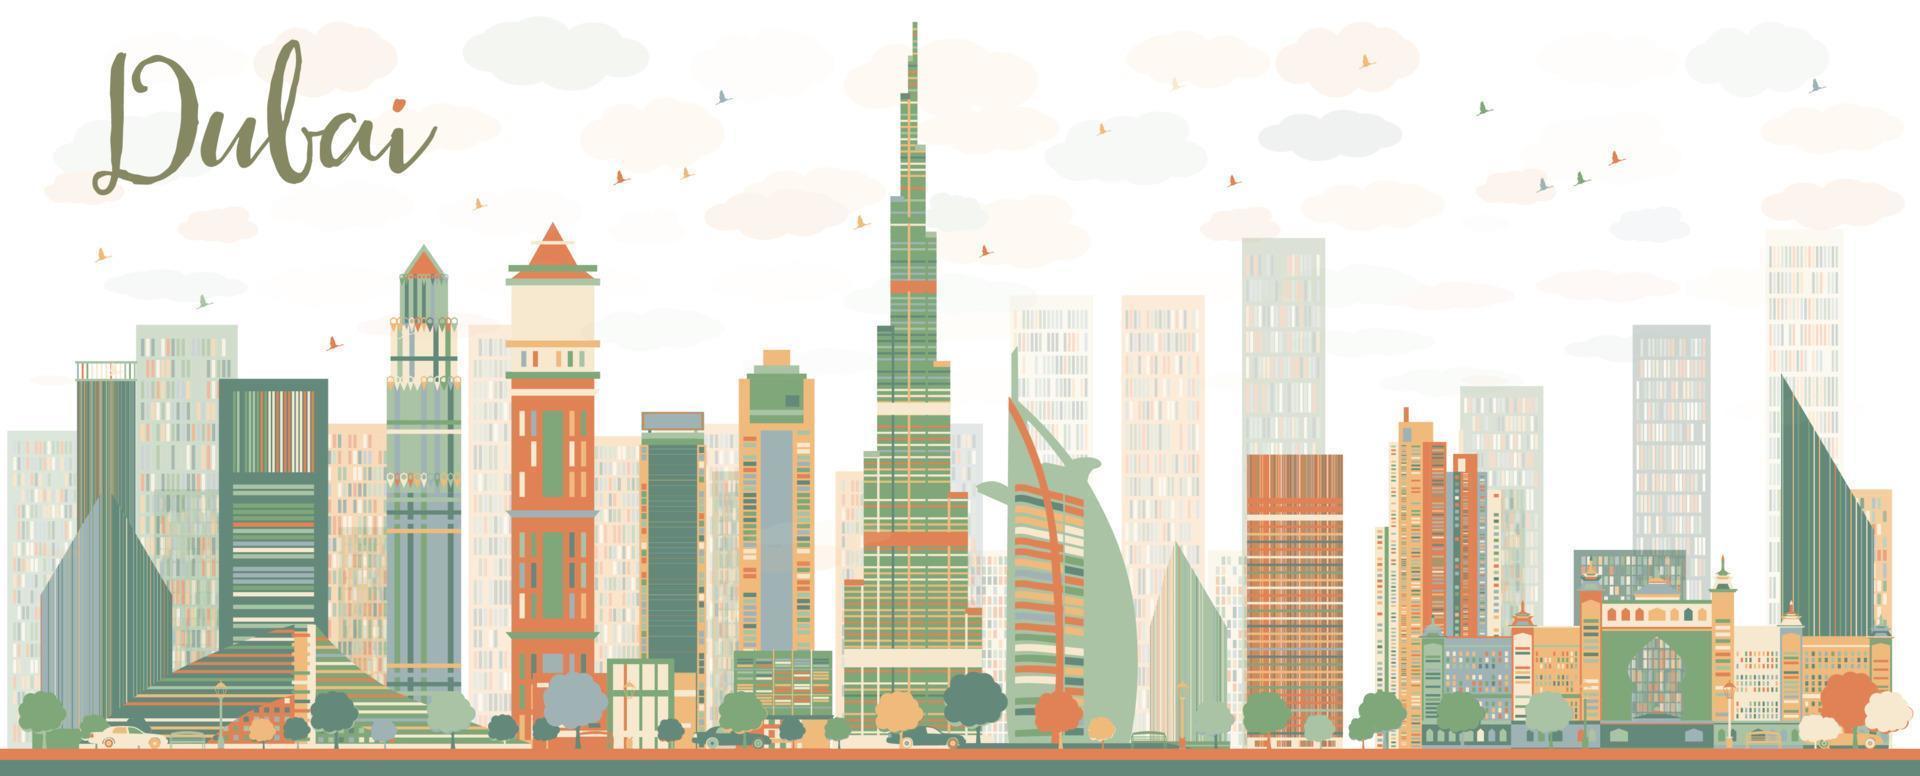 skyline astratto della città di dubai con grattacieli colorati vettore